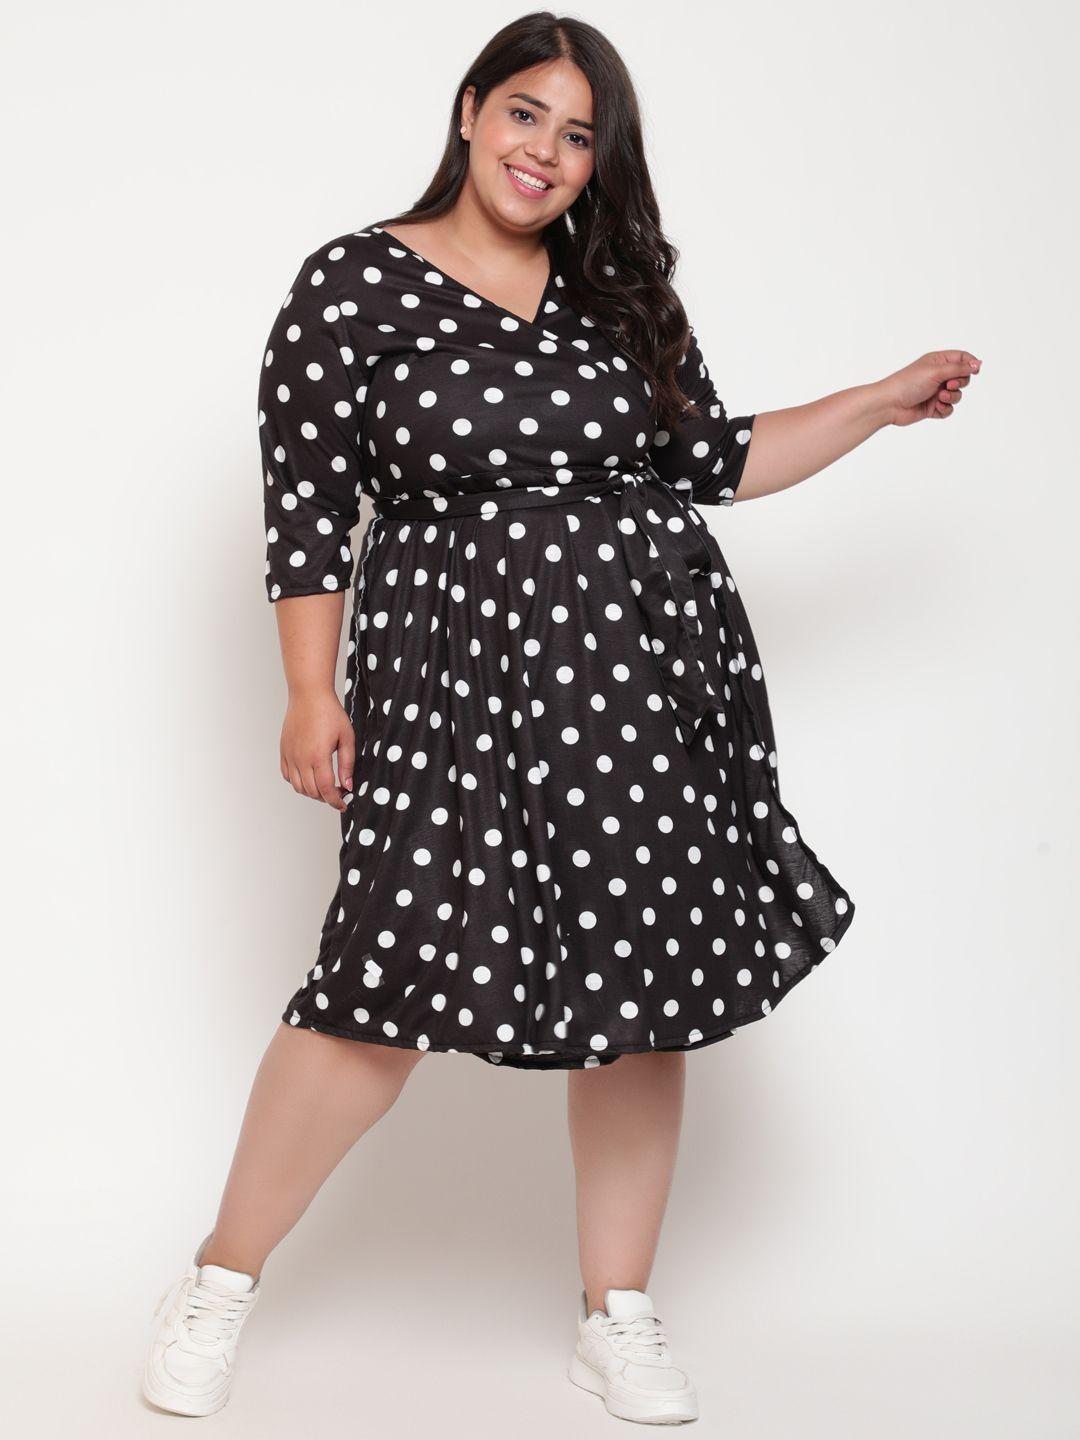 amydus women plus size black & white polka dot wrap dress